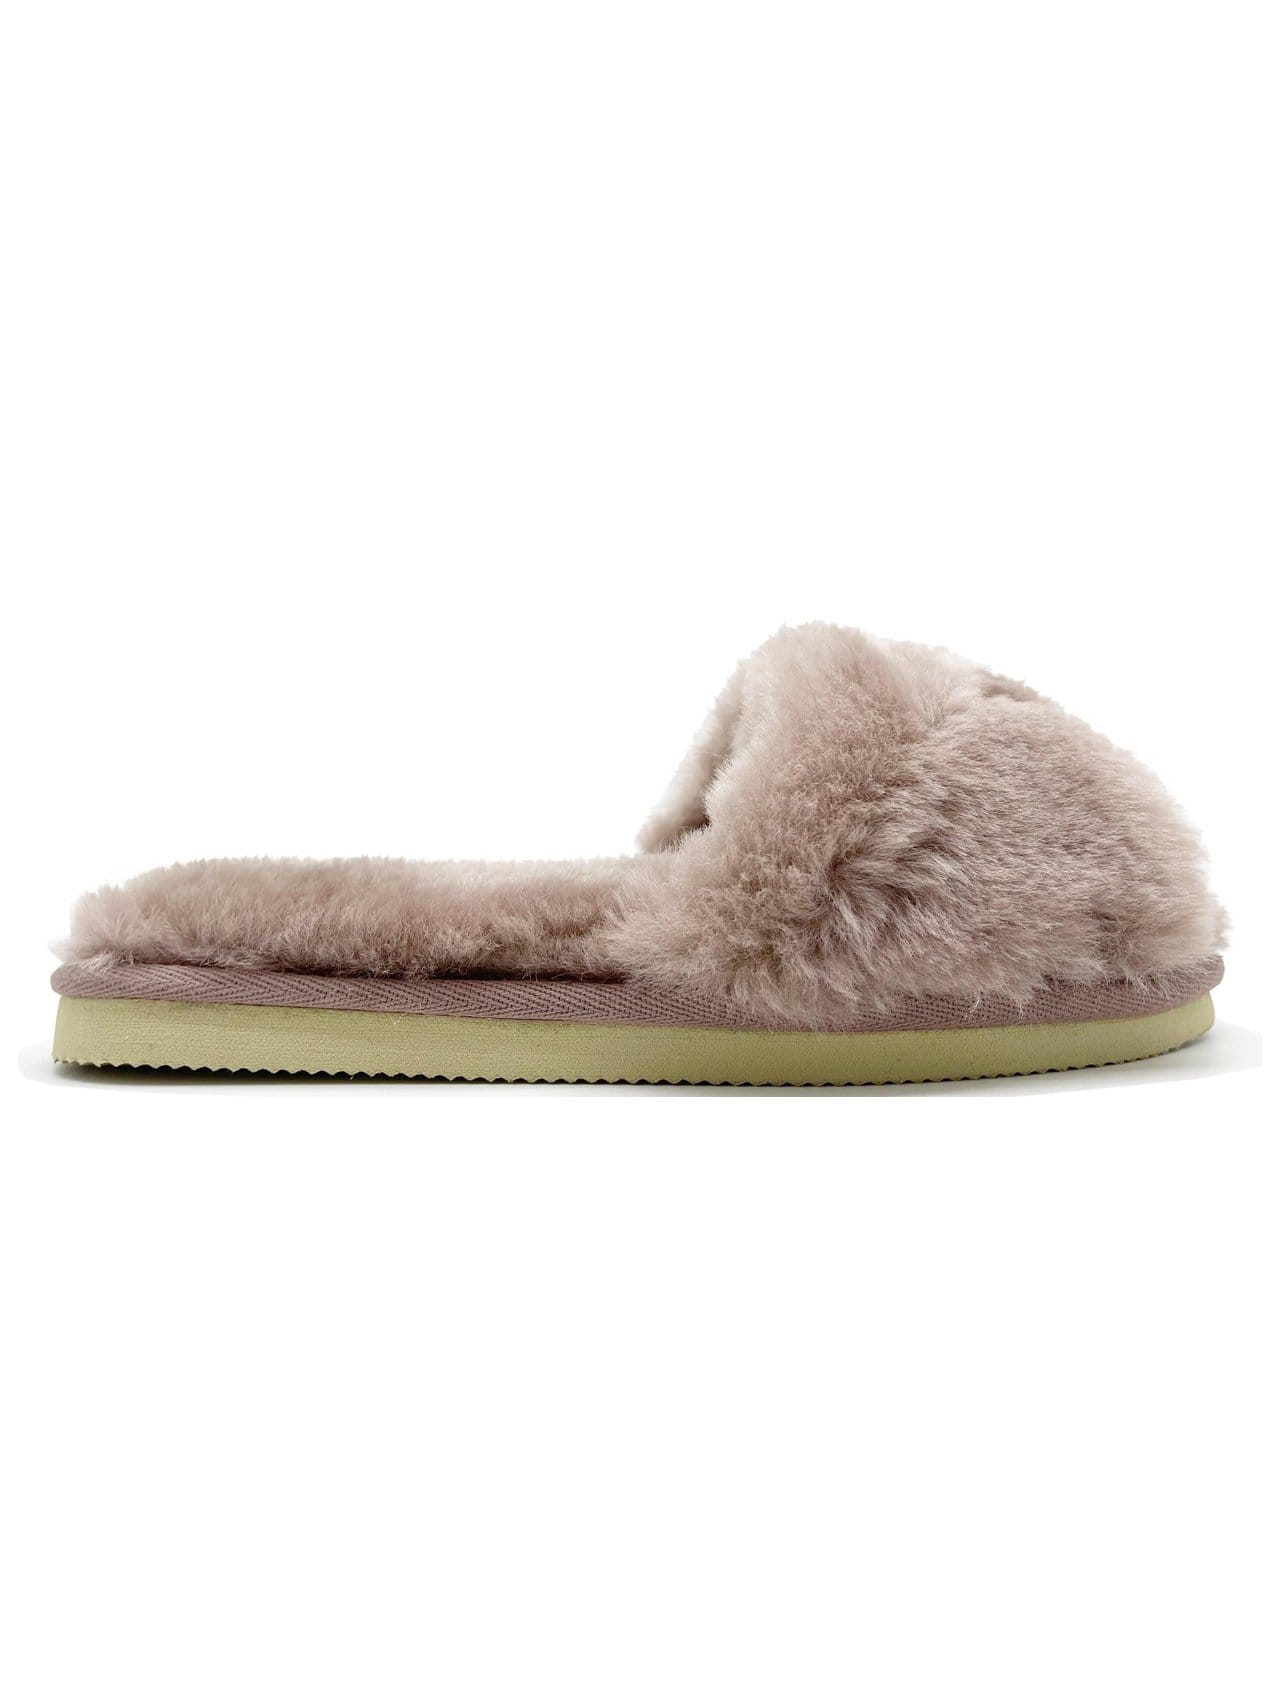 K&T Handels- und Unternehmensberatung GmbH Sleep & Loungewear Fluffy Slide Pink in Sheepskin (W) moda sostenible moda ética